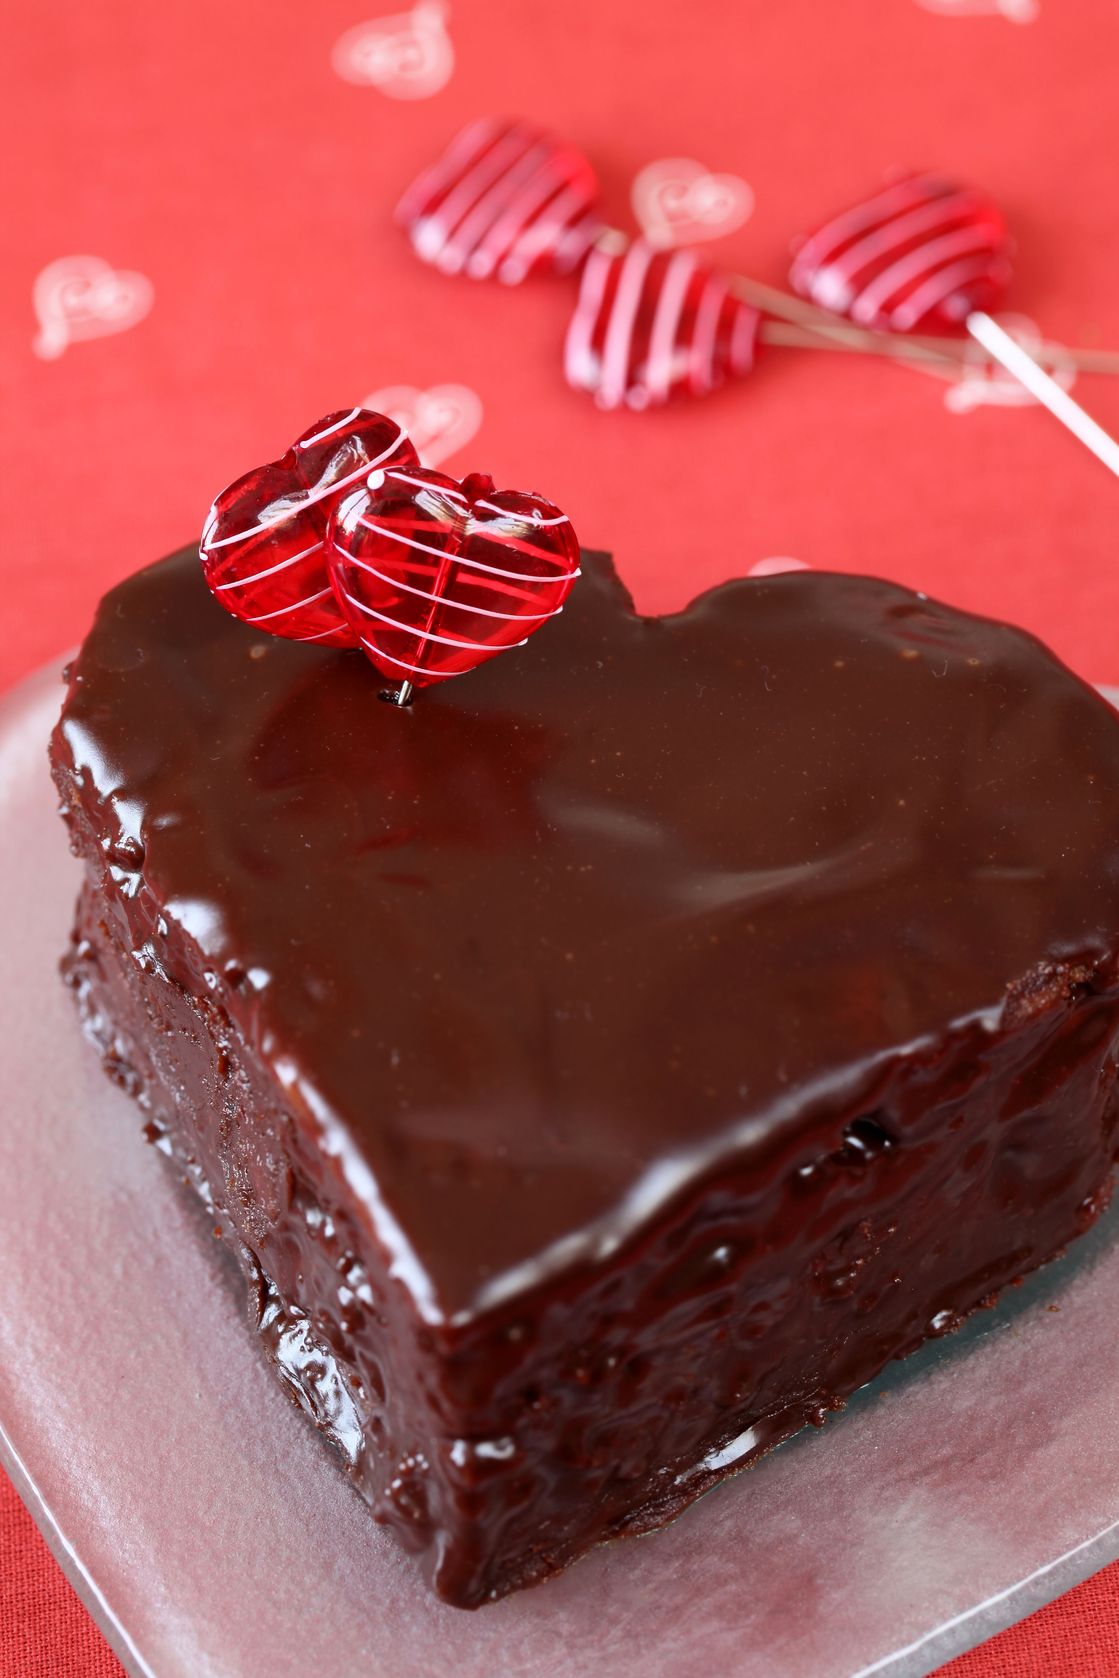 tort de ciocolata in forma de inima